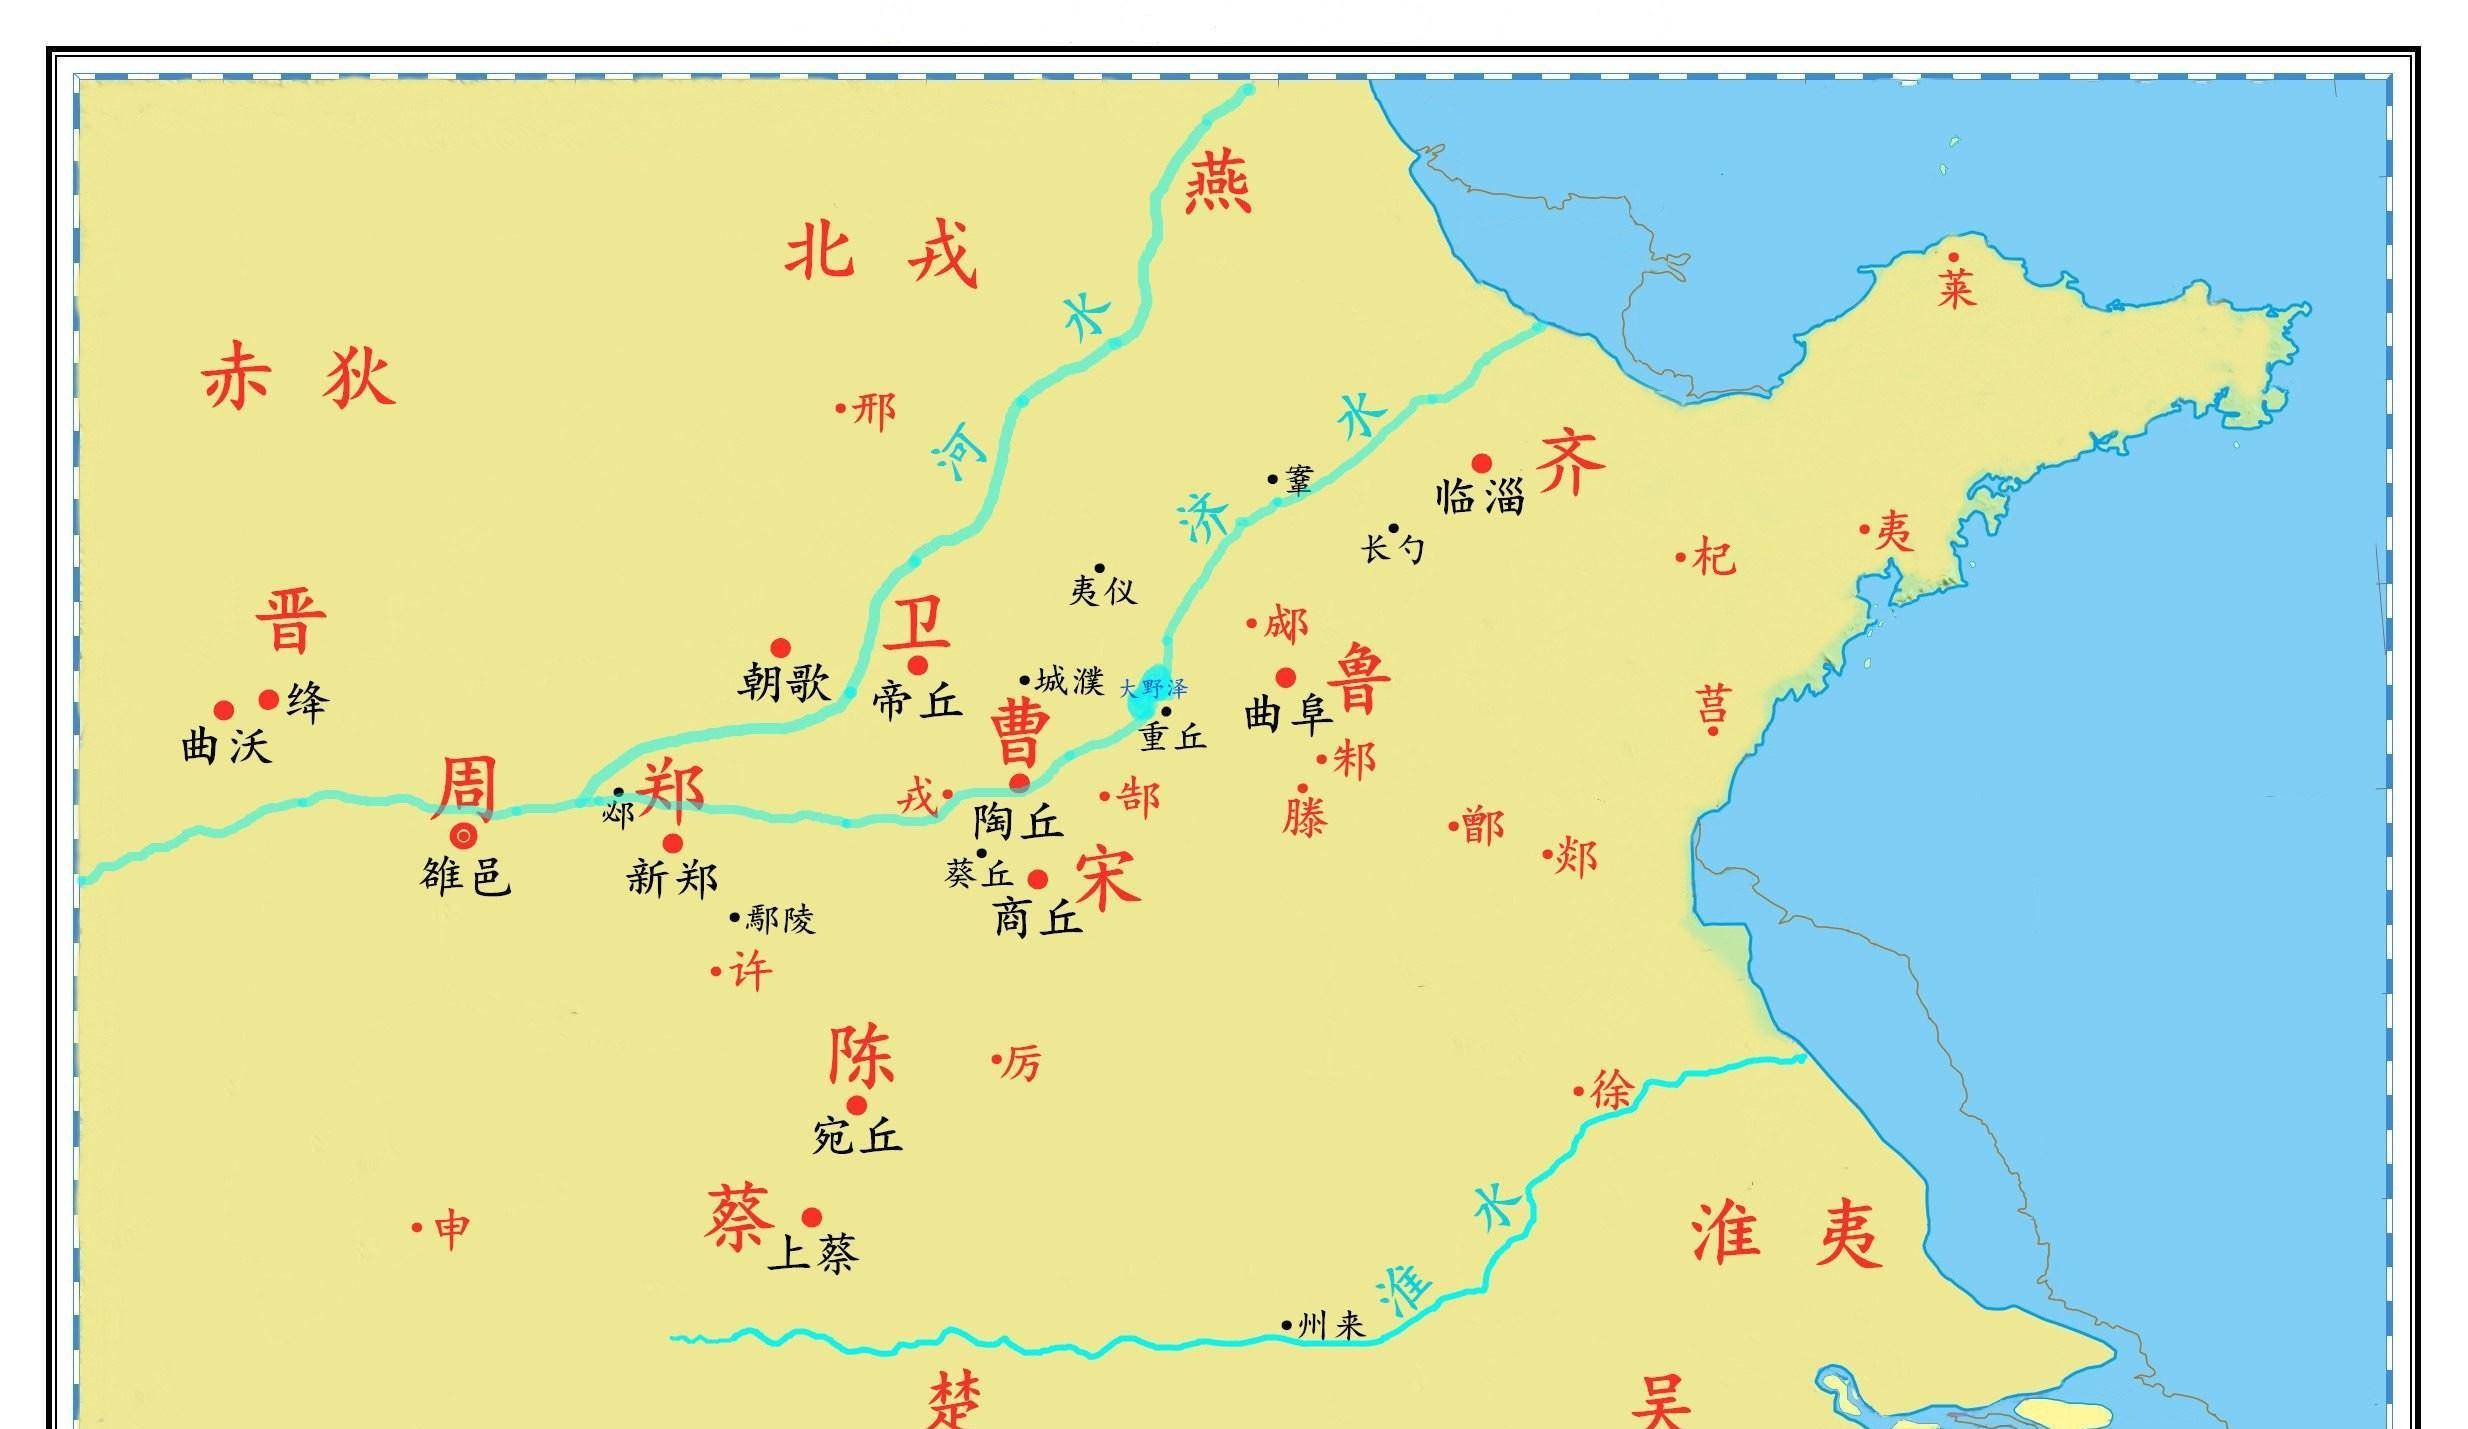 郑庄公时期地图图片